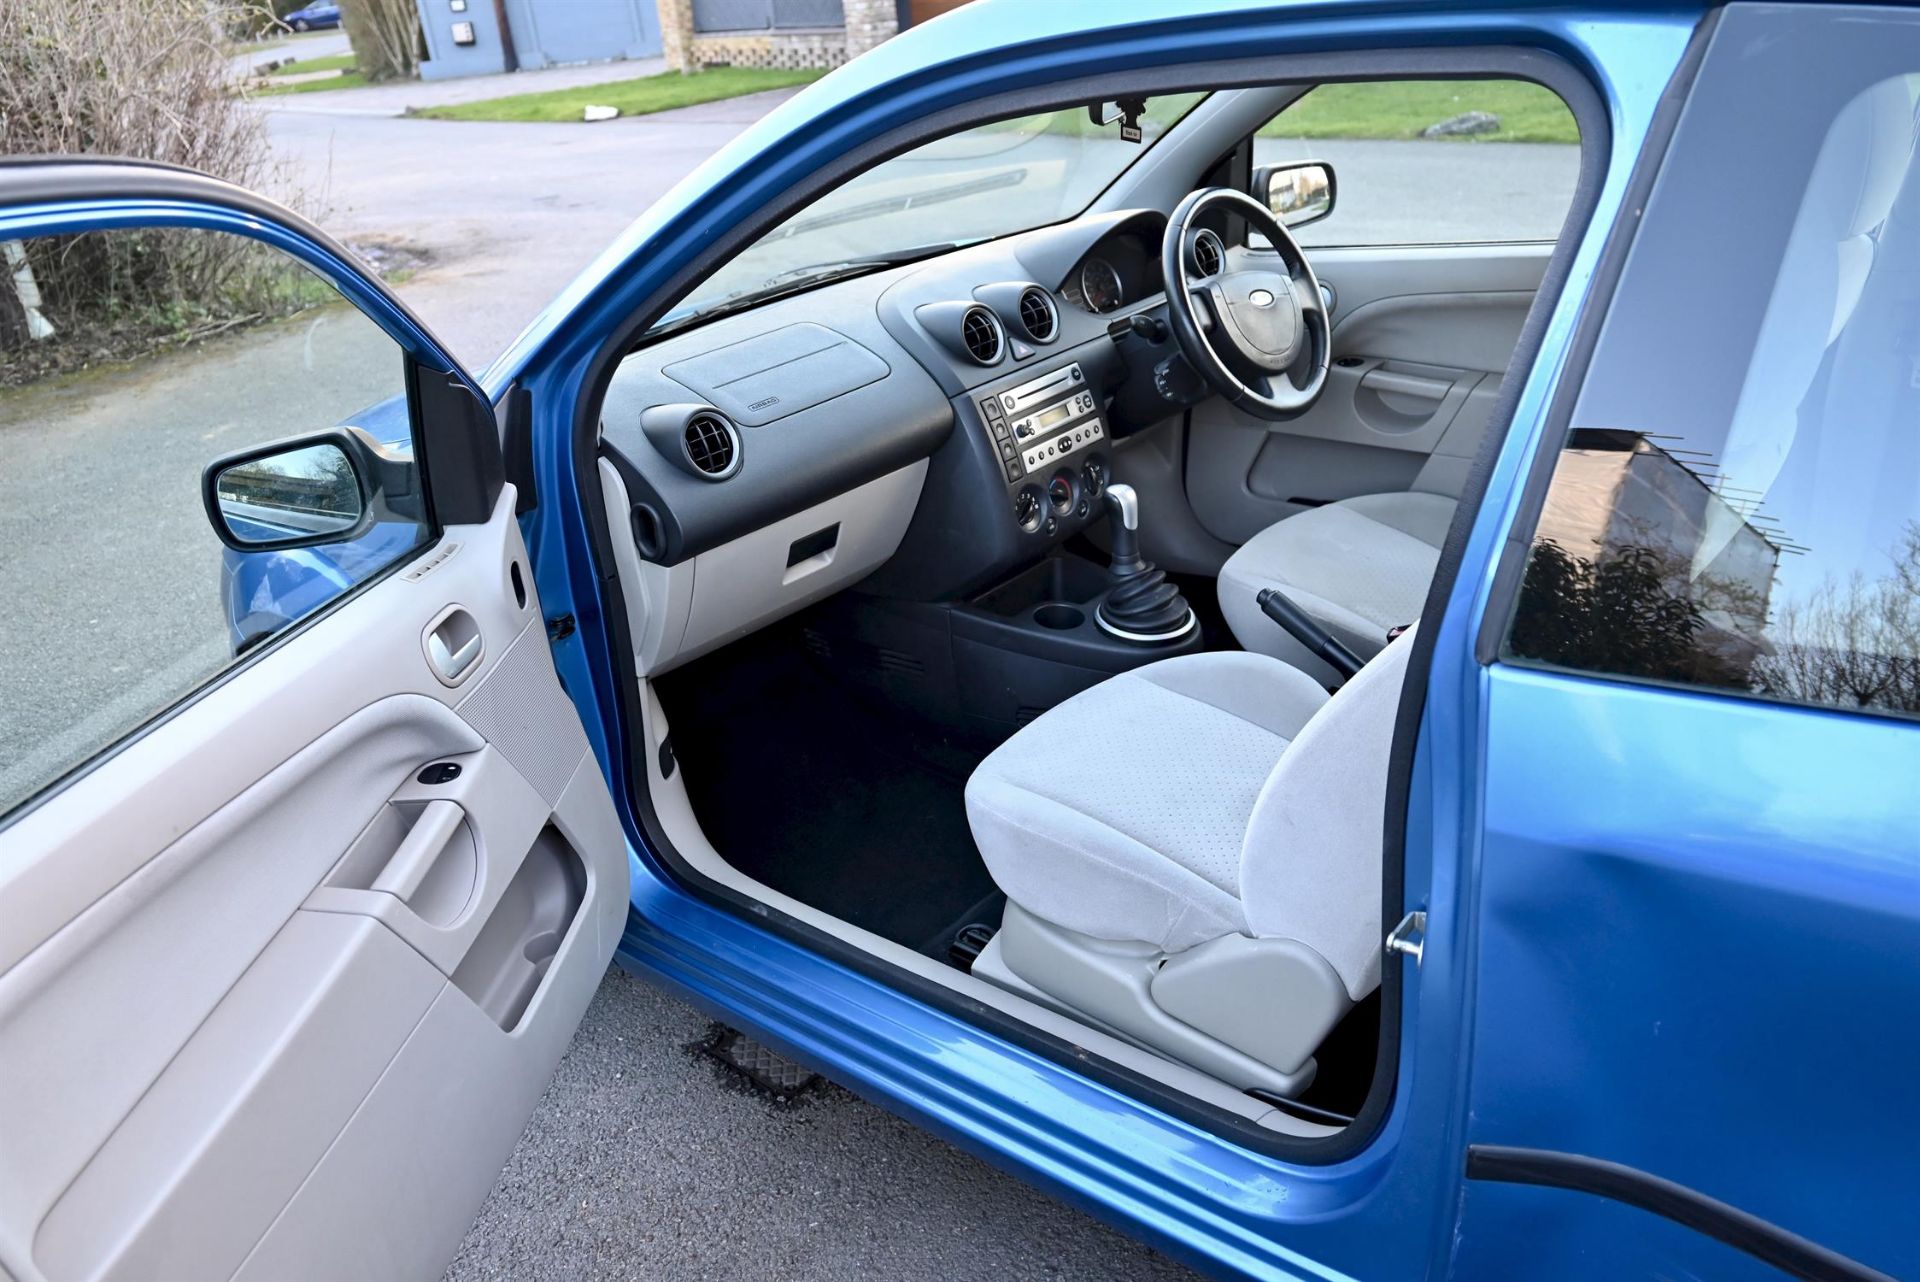 2004 Ford Fiesta 1.4 Ghia 3-door hatchback. Registration number: EO54 JNK. Metallic Aquarius Blue, - Image 10 of 16